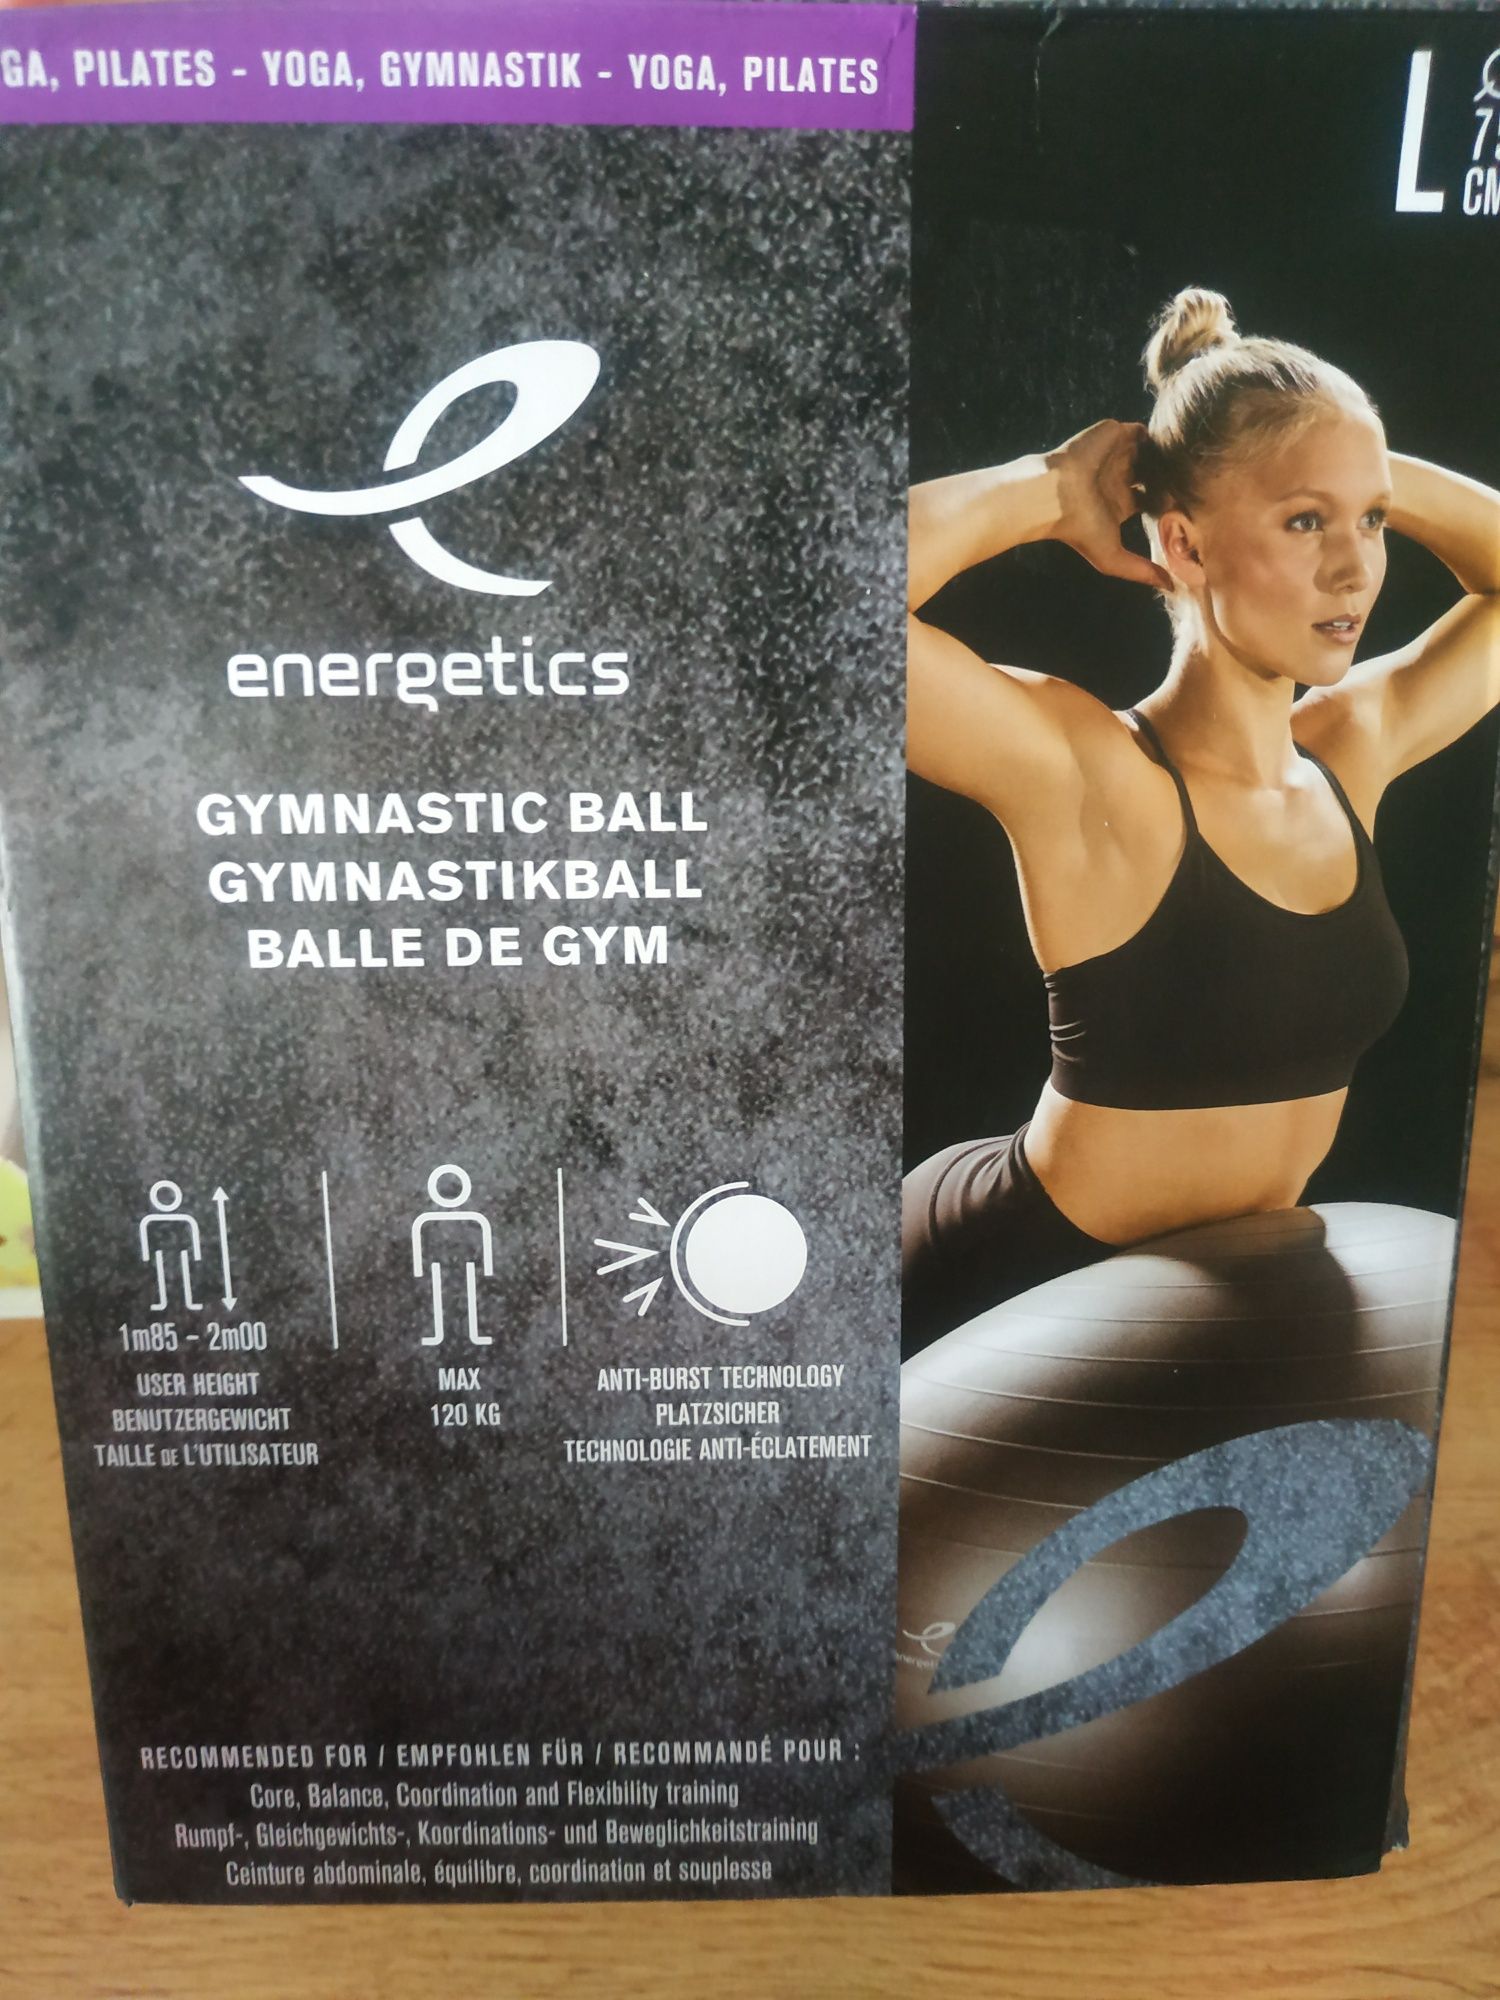 М'яч для гімнастики, пілатесу та спорту.